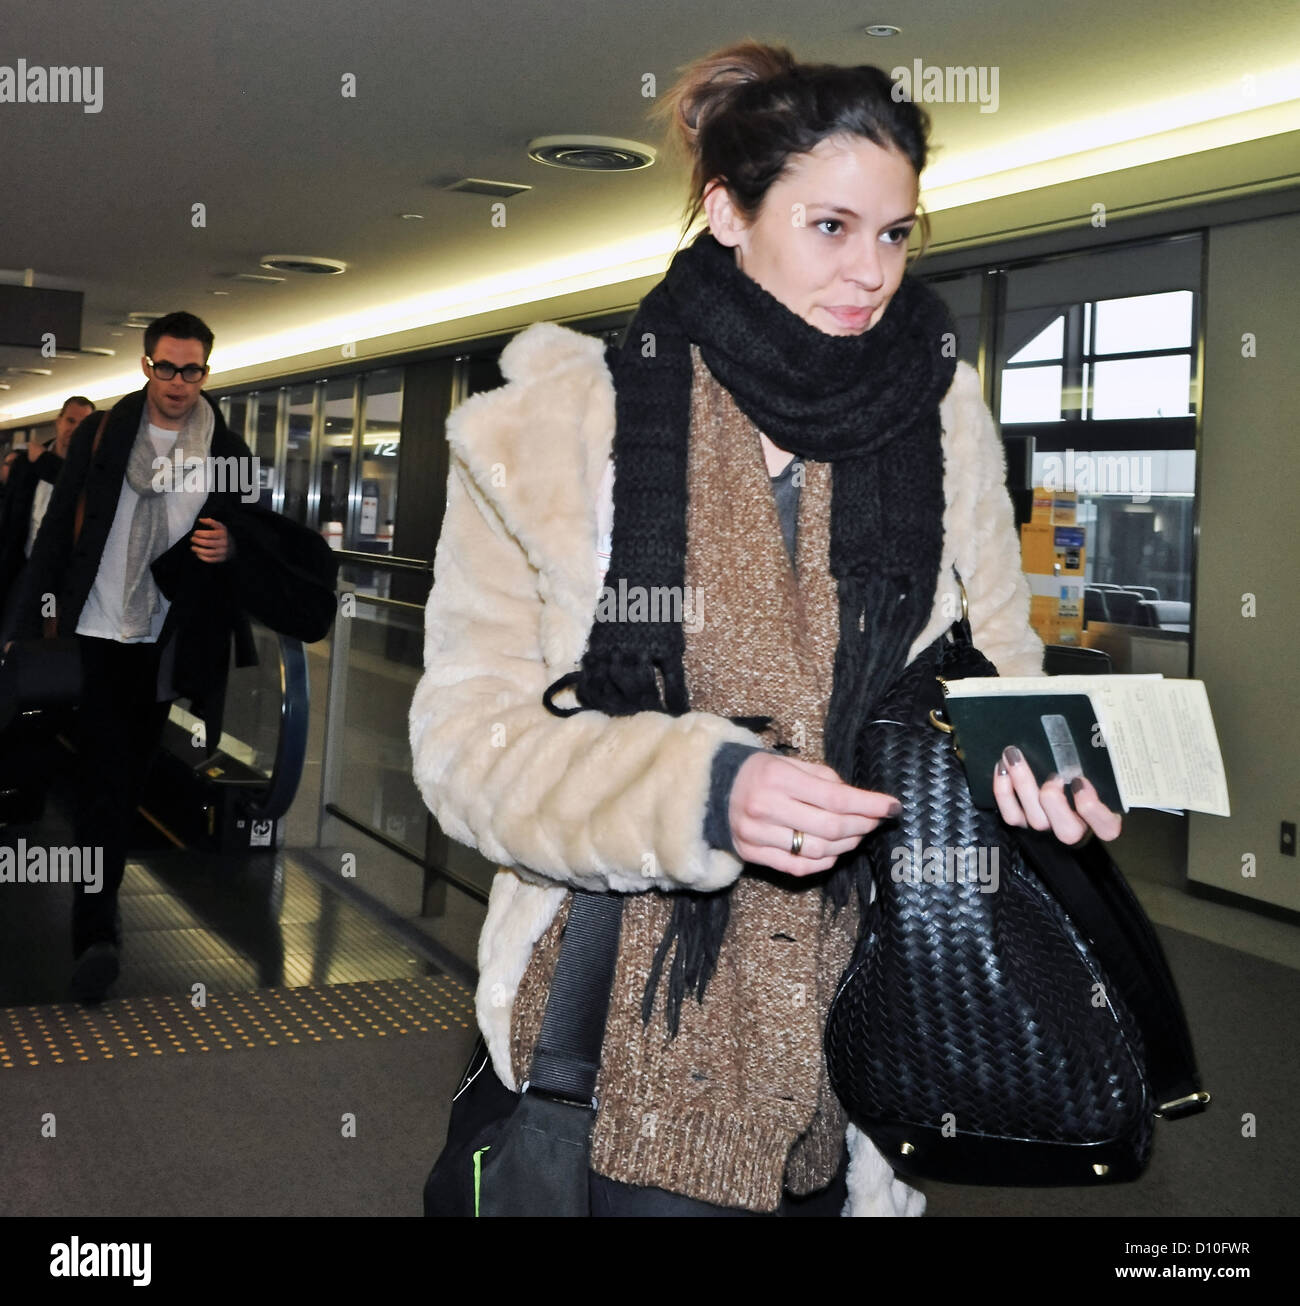 L'acteur Chris Pine et sa compagne Dominique Piek arrivent à l'Aéroport International de Narita, au Japon le 3 décembre 2012 Banque D'Images